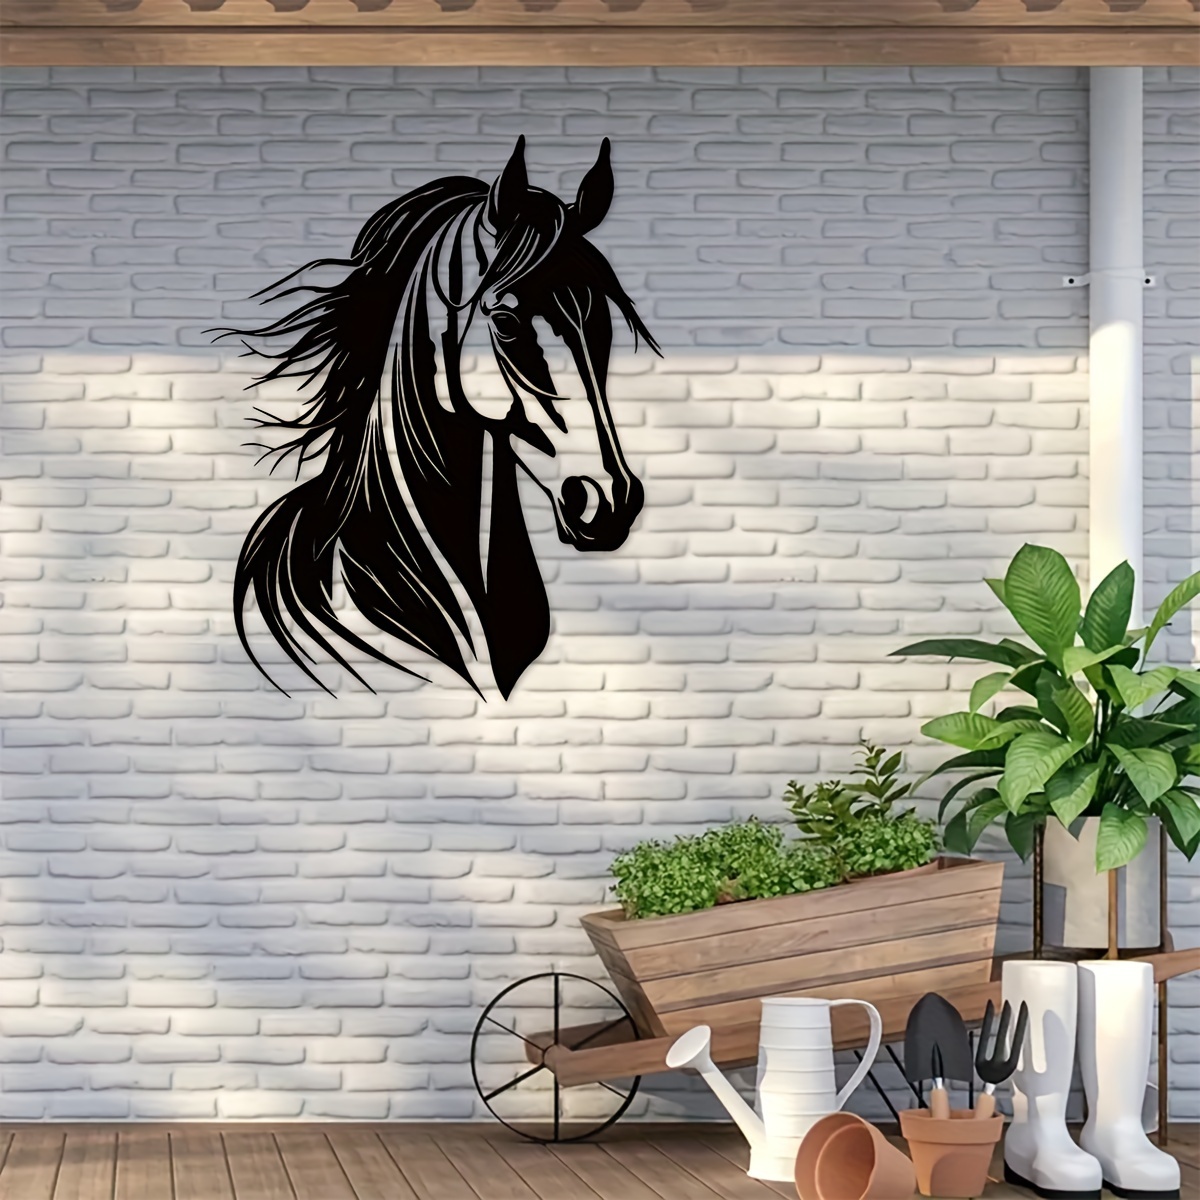 

1pc Metal Wall Art, Exquisite Horse Head Metal Art, Home Decor, Animal Wall Art, Indoor Outdoor Decor, Gift